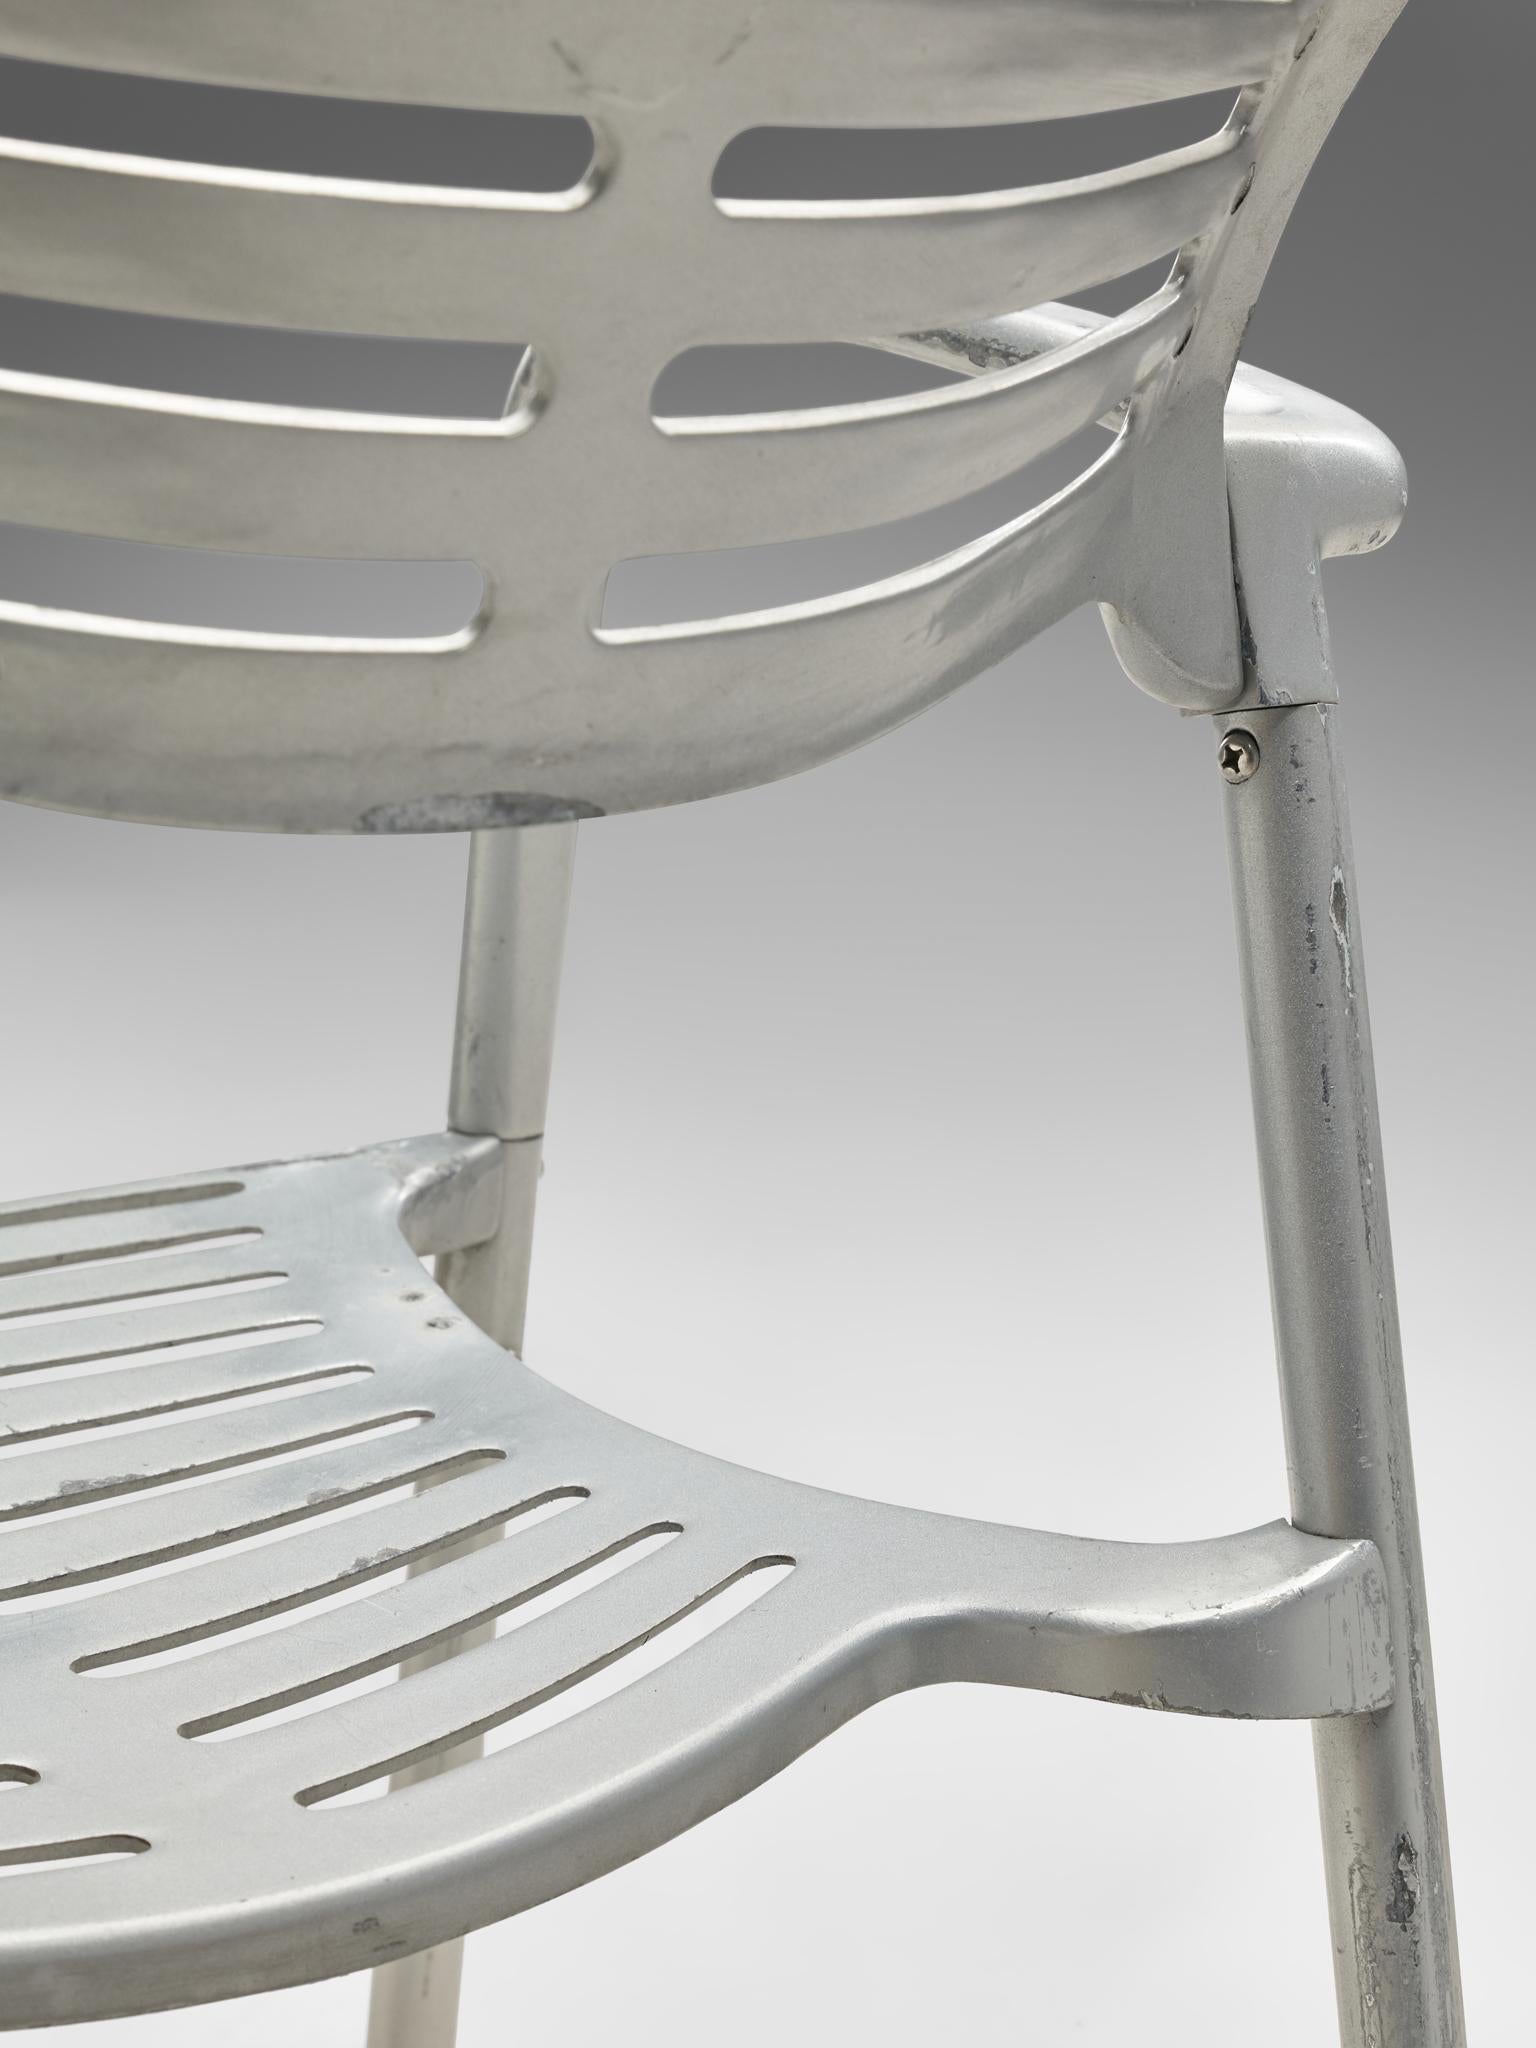 Jorge Pensi 'Toledo' Armchairs in Aluminum 4